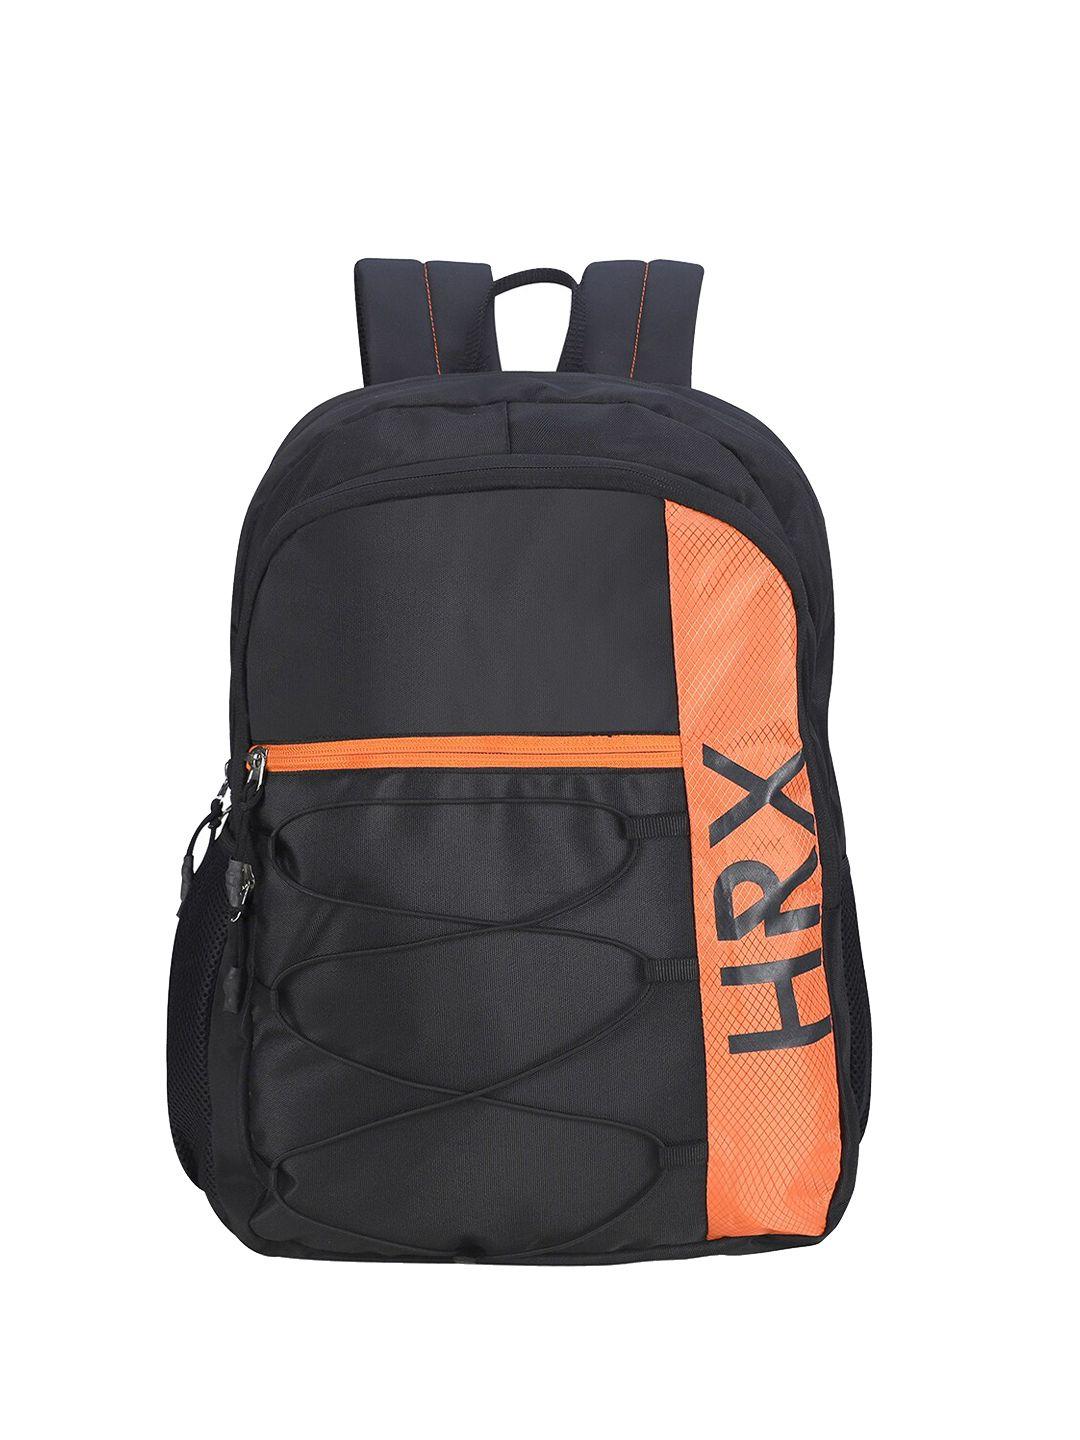 hrx by hrithik roshan unisex black & black brand logo backpack